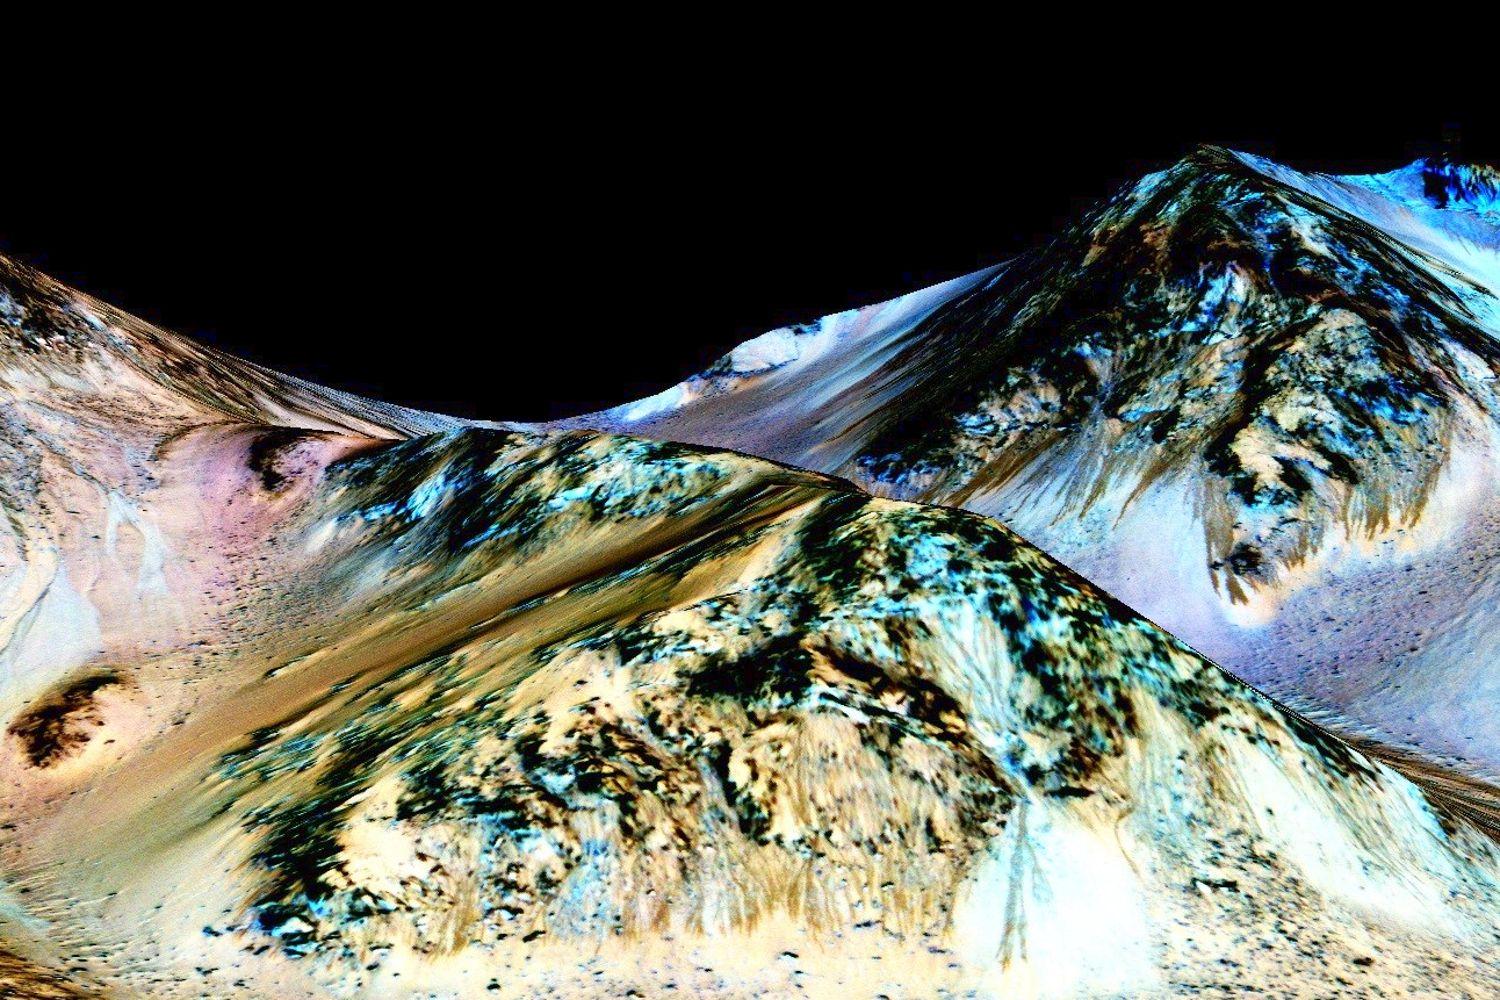 المريخ "رسمياً" ممتلئ بالمياه.. إعلان ناسا الأخير الذي فاجأت به العالم! 1